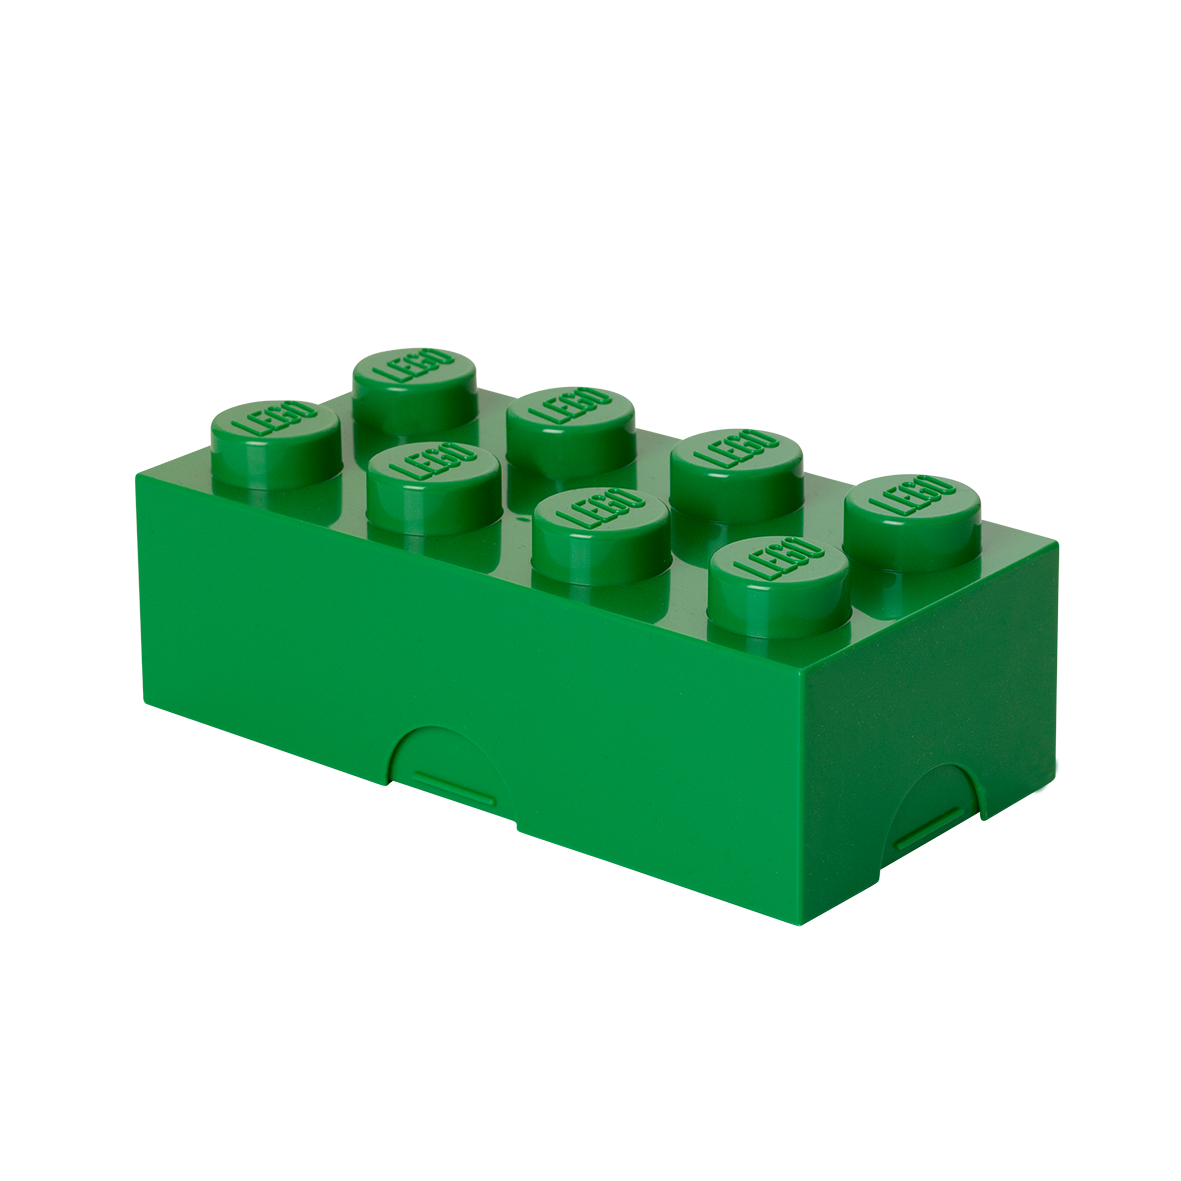 ΚΟΥΤΙ ΑΠΟΘΗΚΕΥΣΗΣ LEGO ΟΡΘΟΓΩΝΙΟ CLASSIC ΠΡΑΣΙΝΟ 25x25x18cm- 40231734